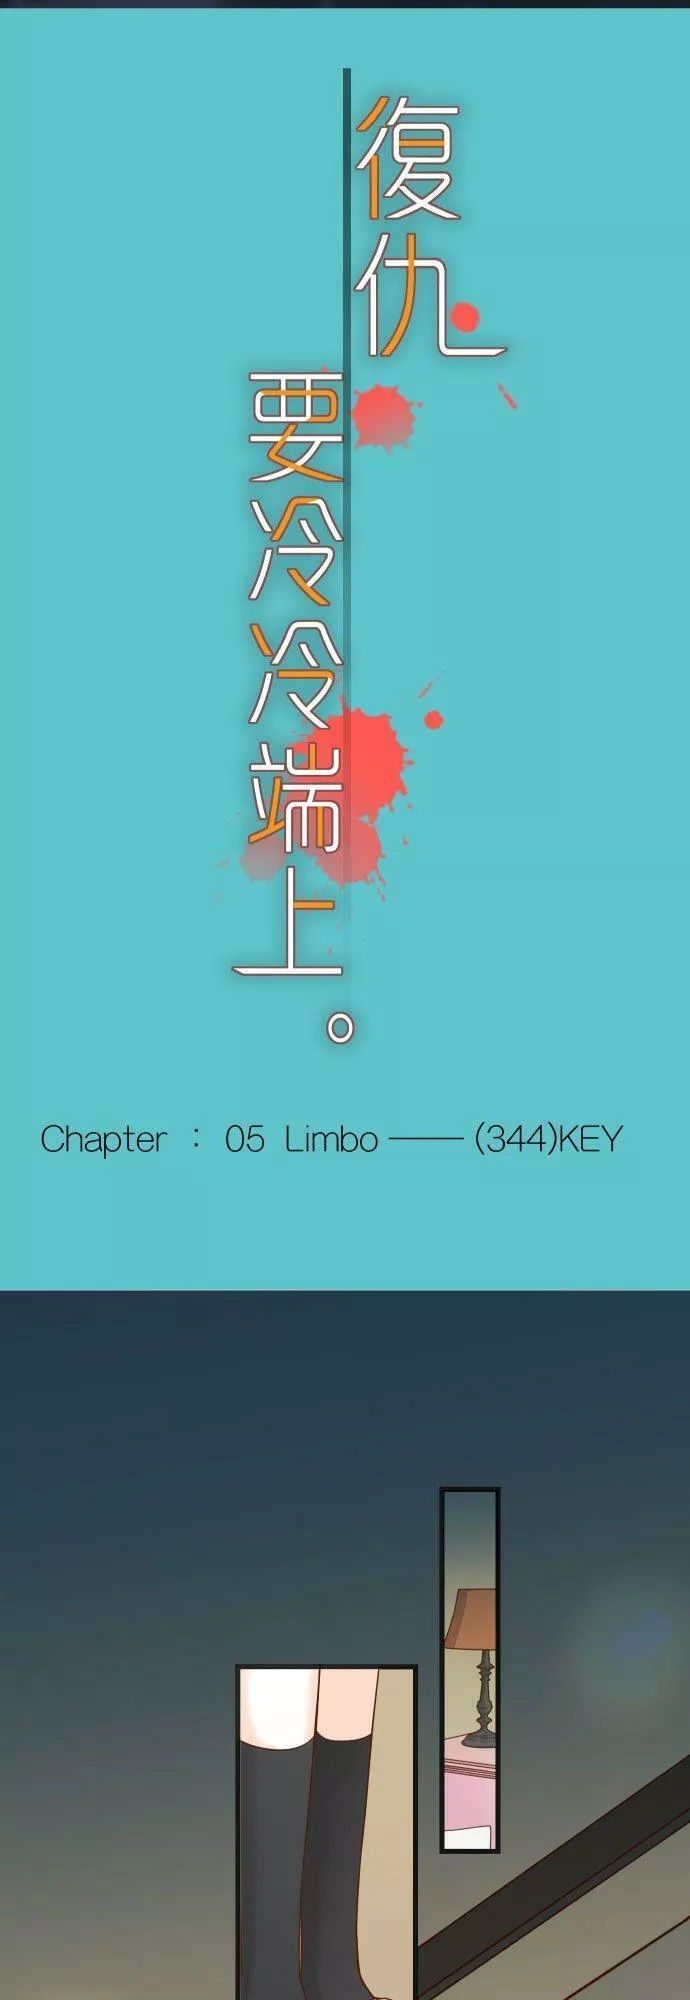 第五章 Limbo 344： KEY5